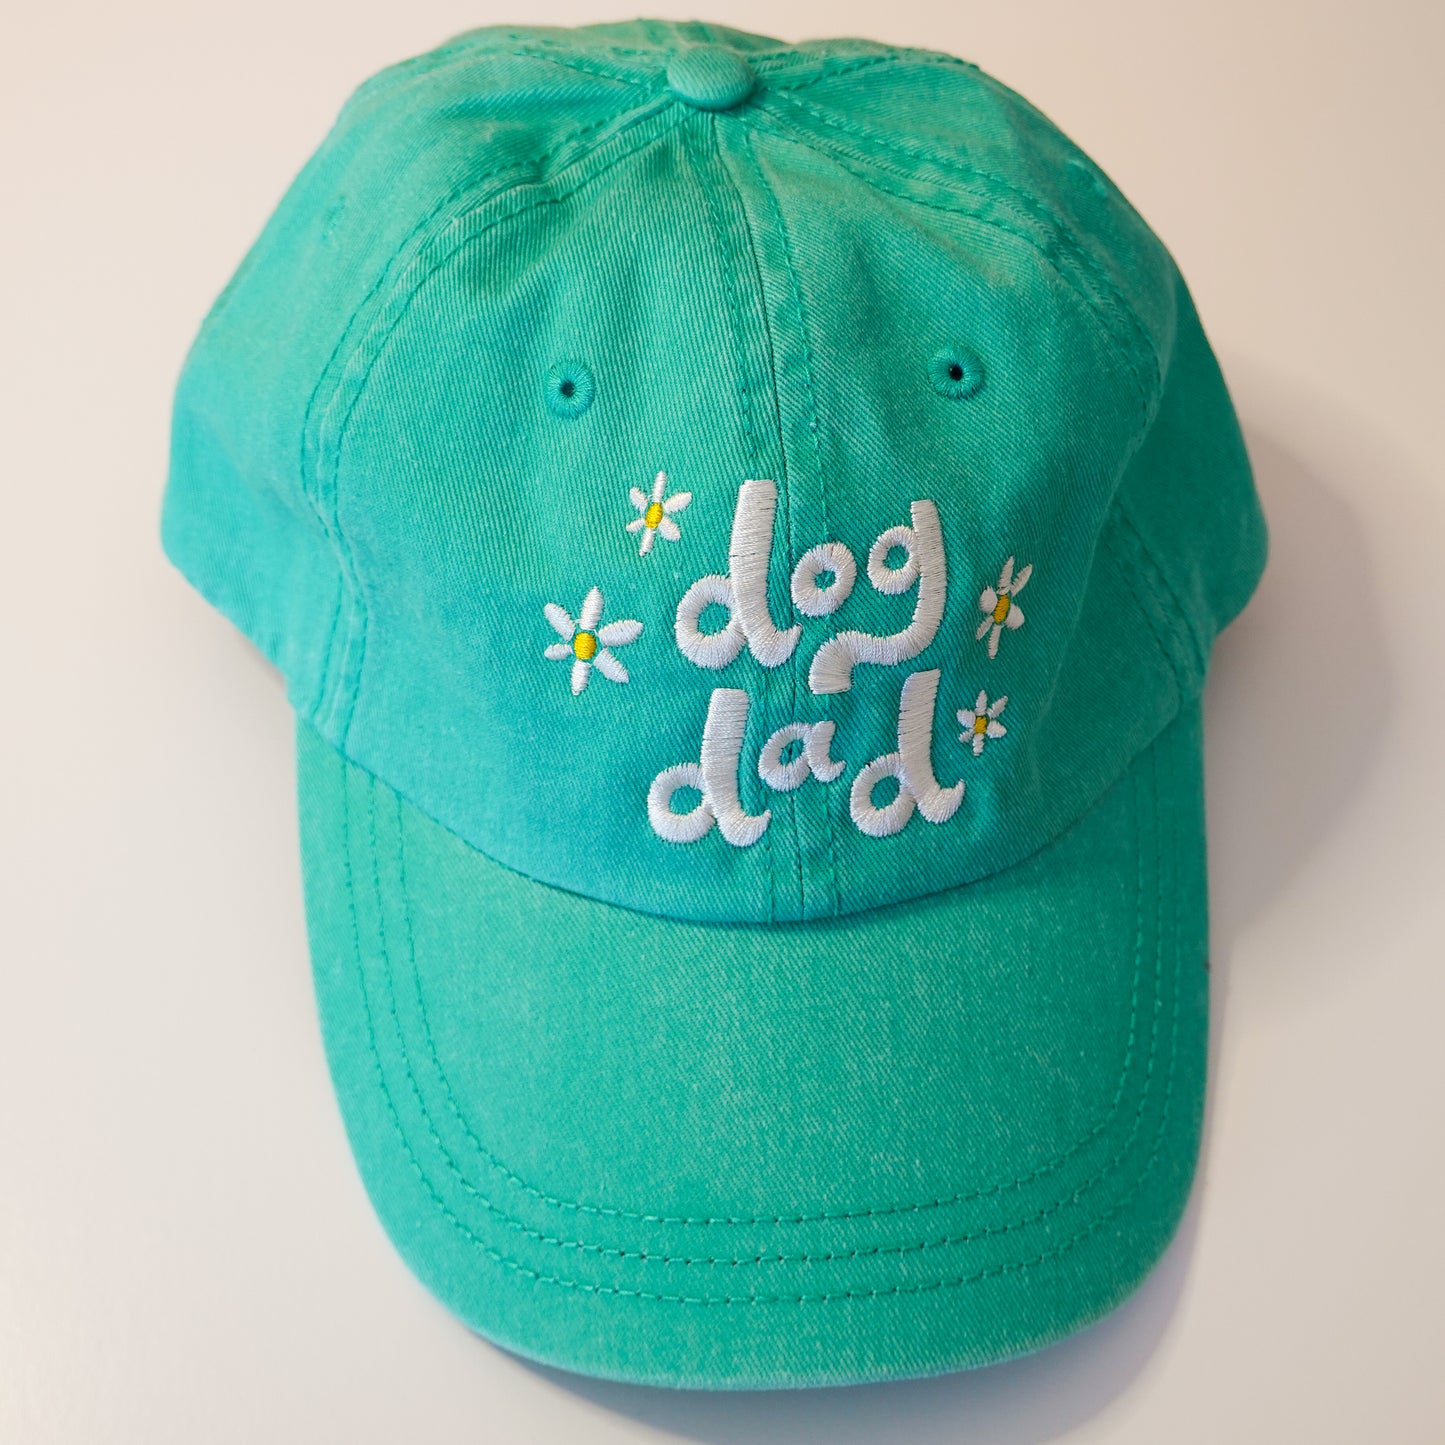 Dog Dad hat